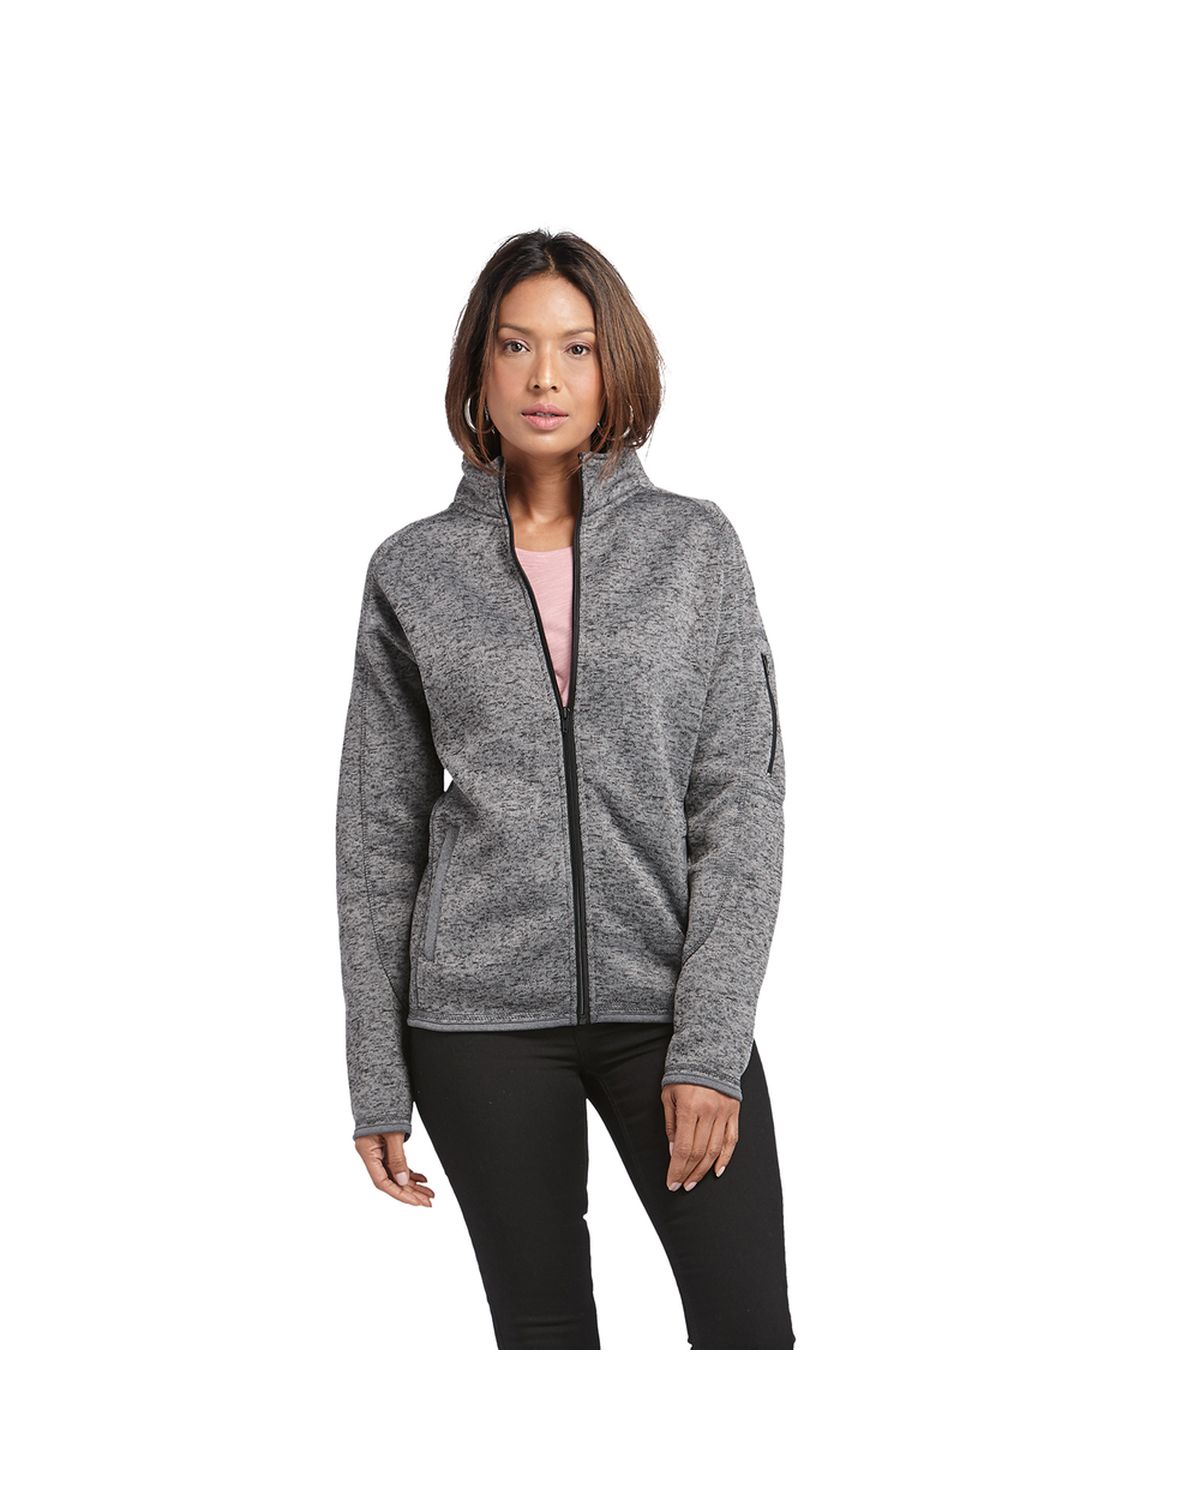 'Burnside 5901 Ladies Sweater Knit Fleece Jacket'